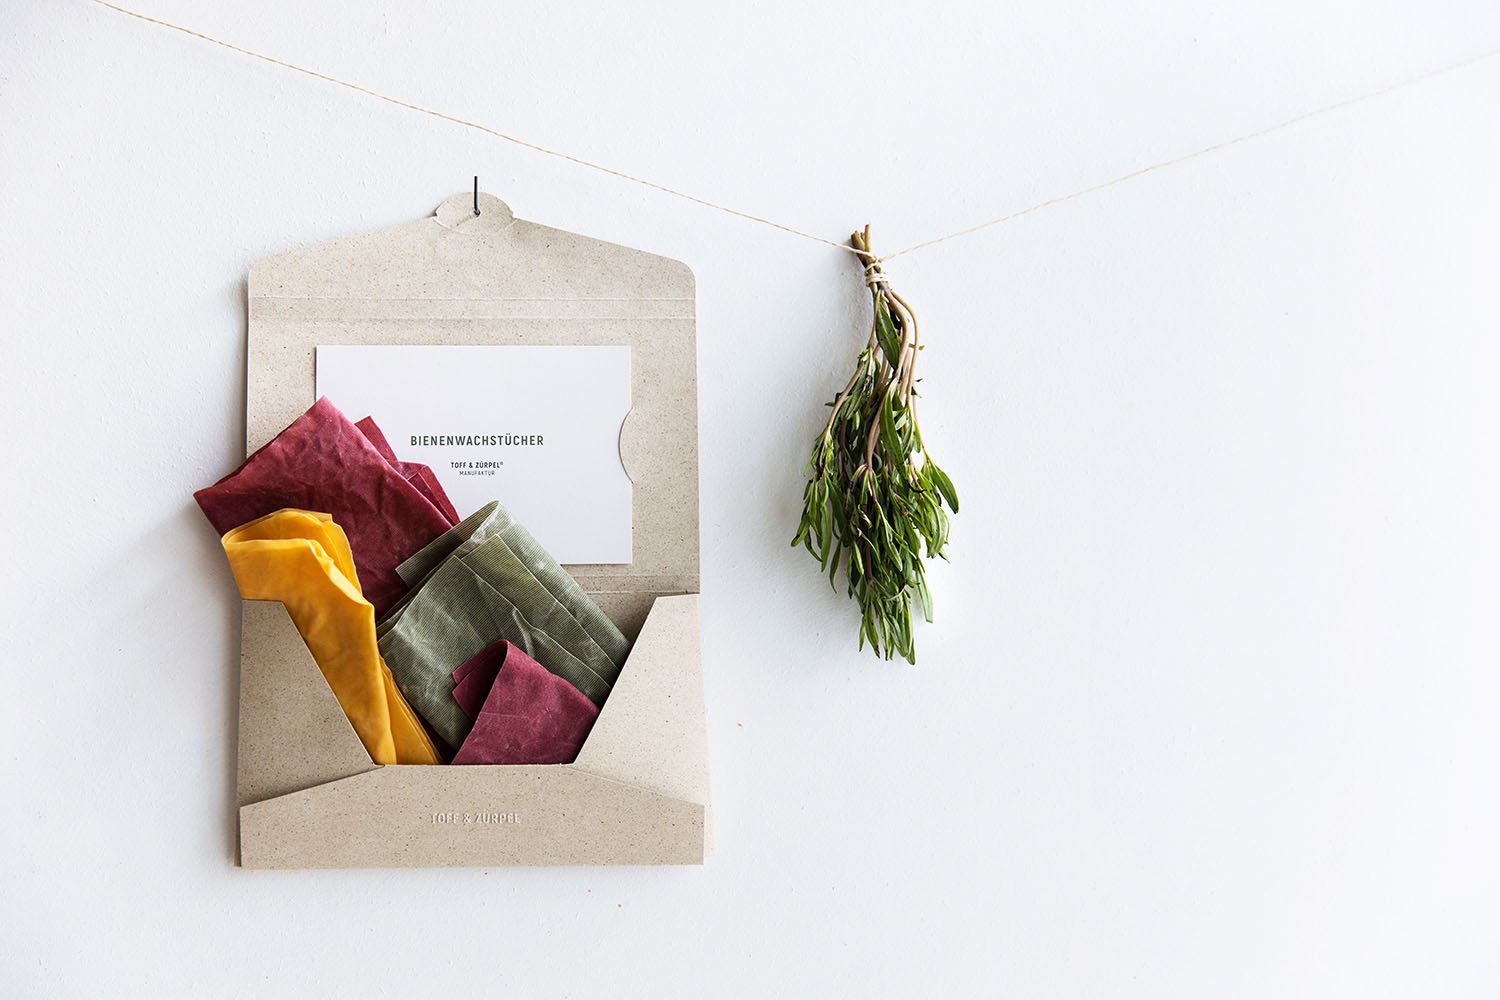 Unsere wiederverwendbare Graspapier-Verpackung offen aufgehängt und gefüllt mit Bienenwachstücher in den Farben Grün, Rot und Gelb, daneben hängt ein Bündel Kräuter.